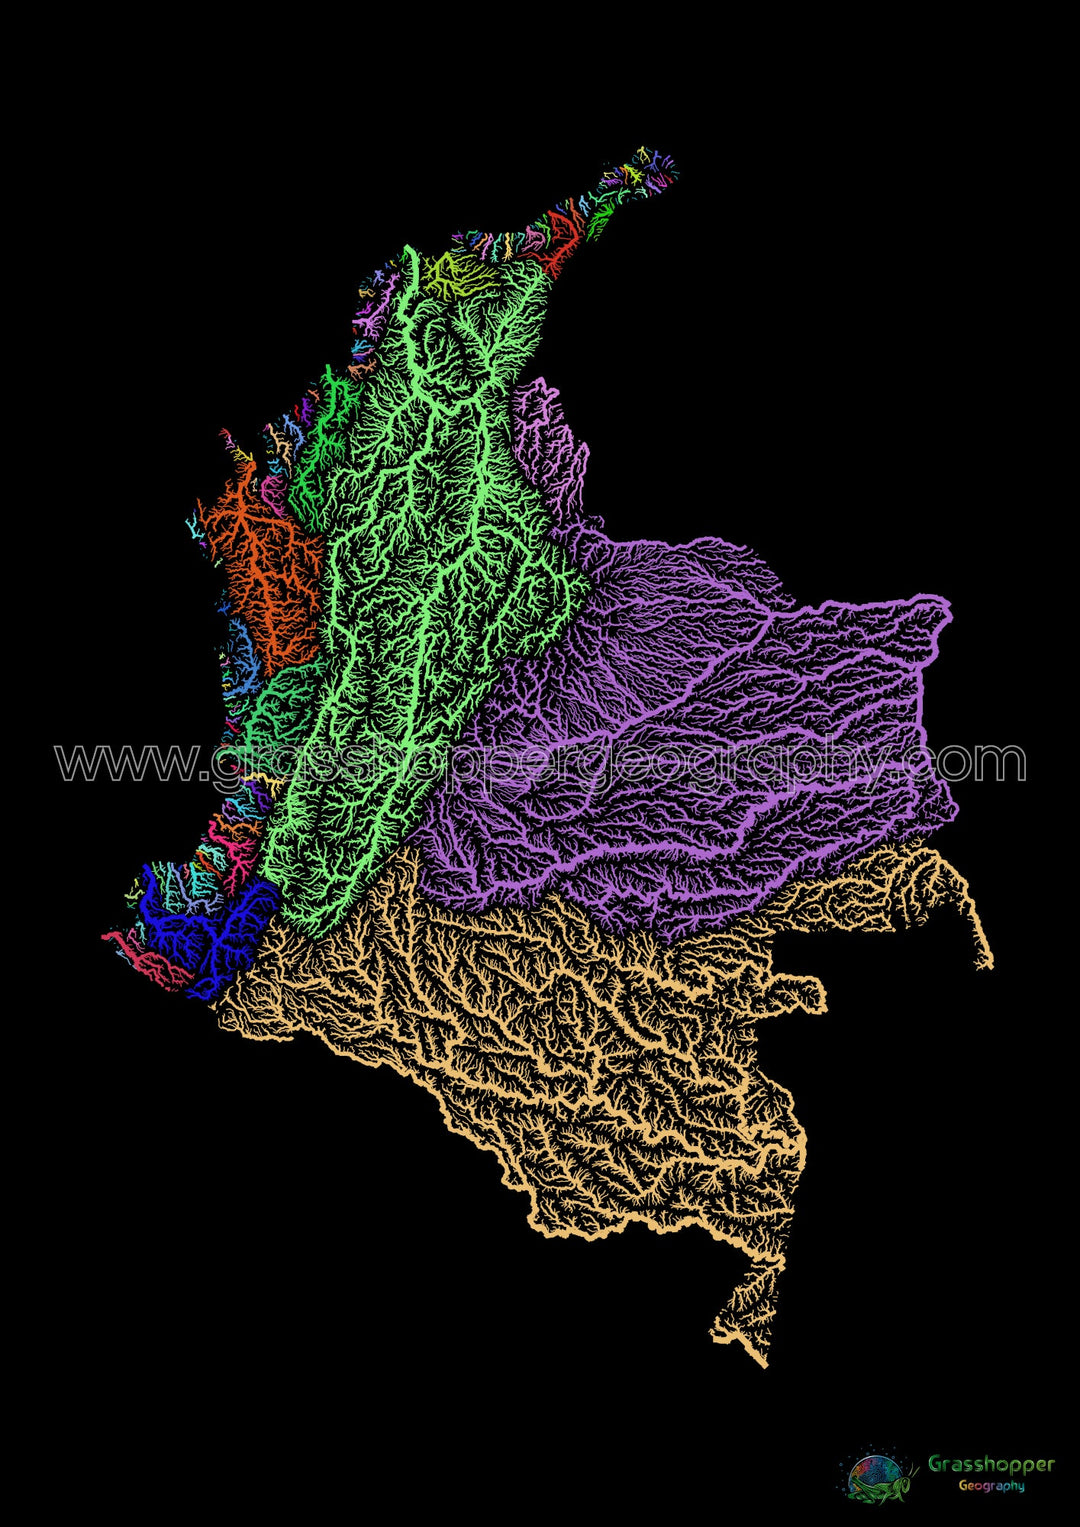 Colombia - Mapa de cuencas fluviales, arcoíris sobre negro - Impresión de Bellas Artes